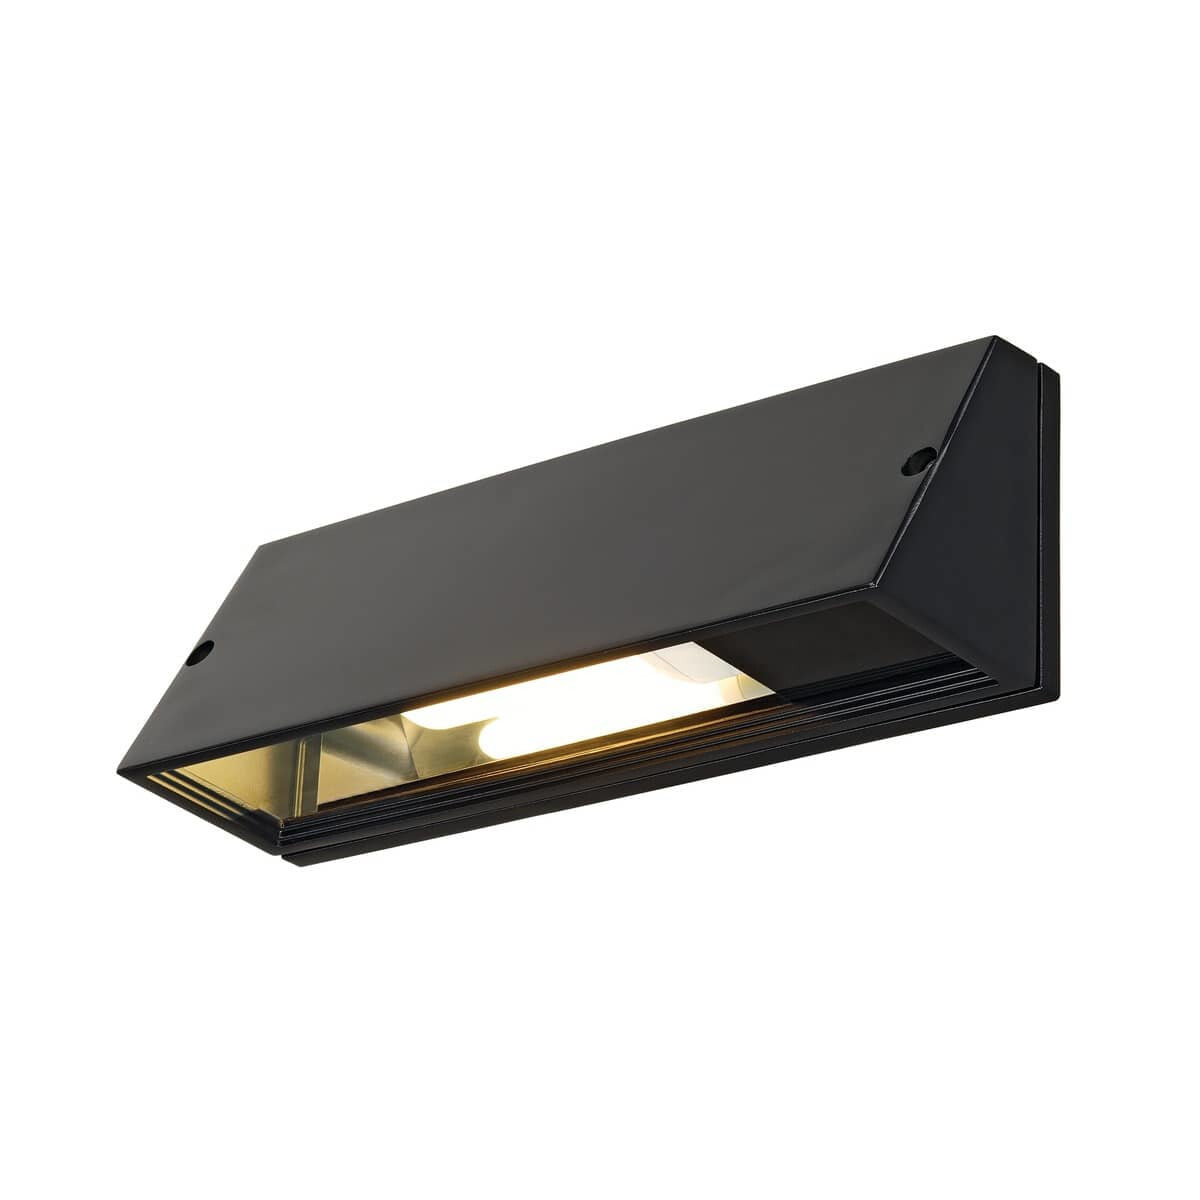 SLV PEMA - Outdoor wall lighting - Black - Aluminium - IP65 - Facade - I